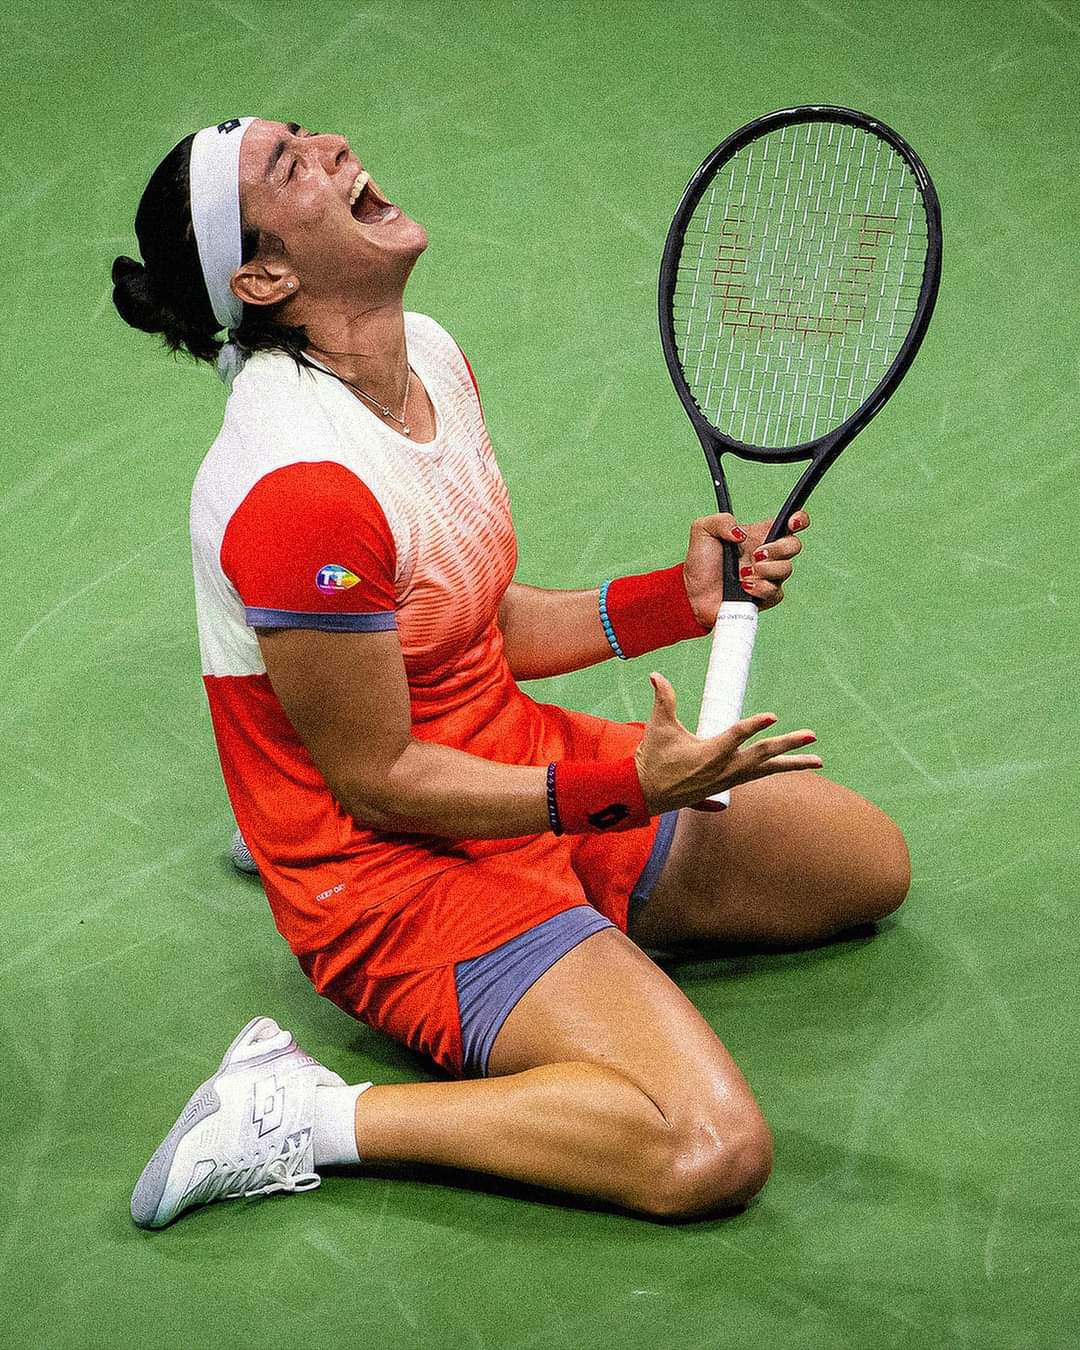 أنس جابر تخسر نهائي دورة أمريكا المفتوحة